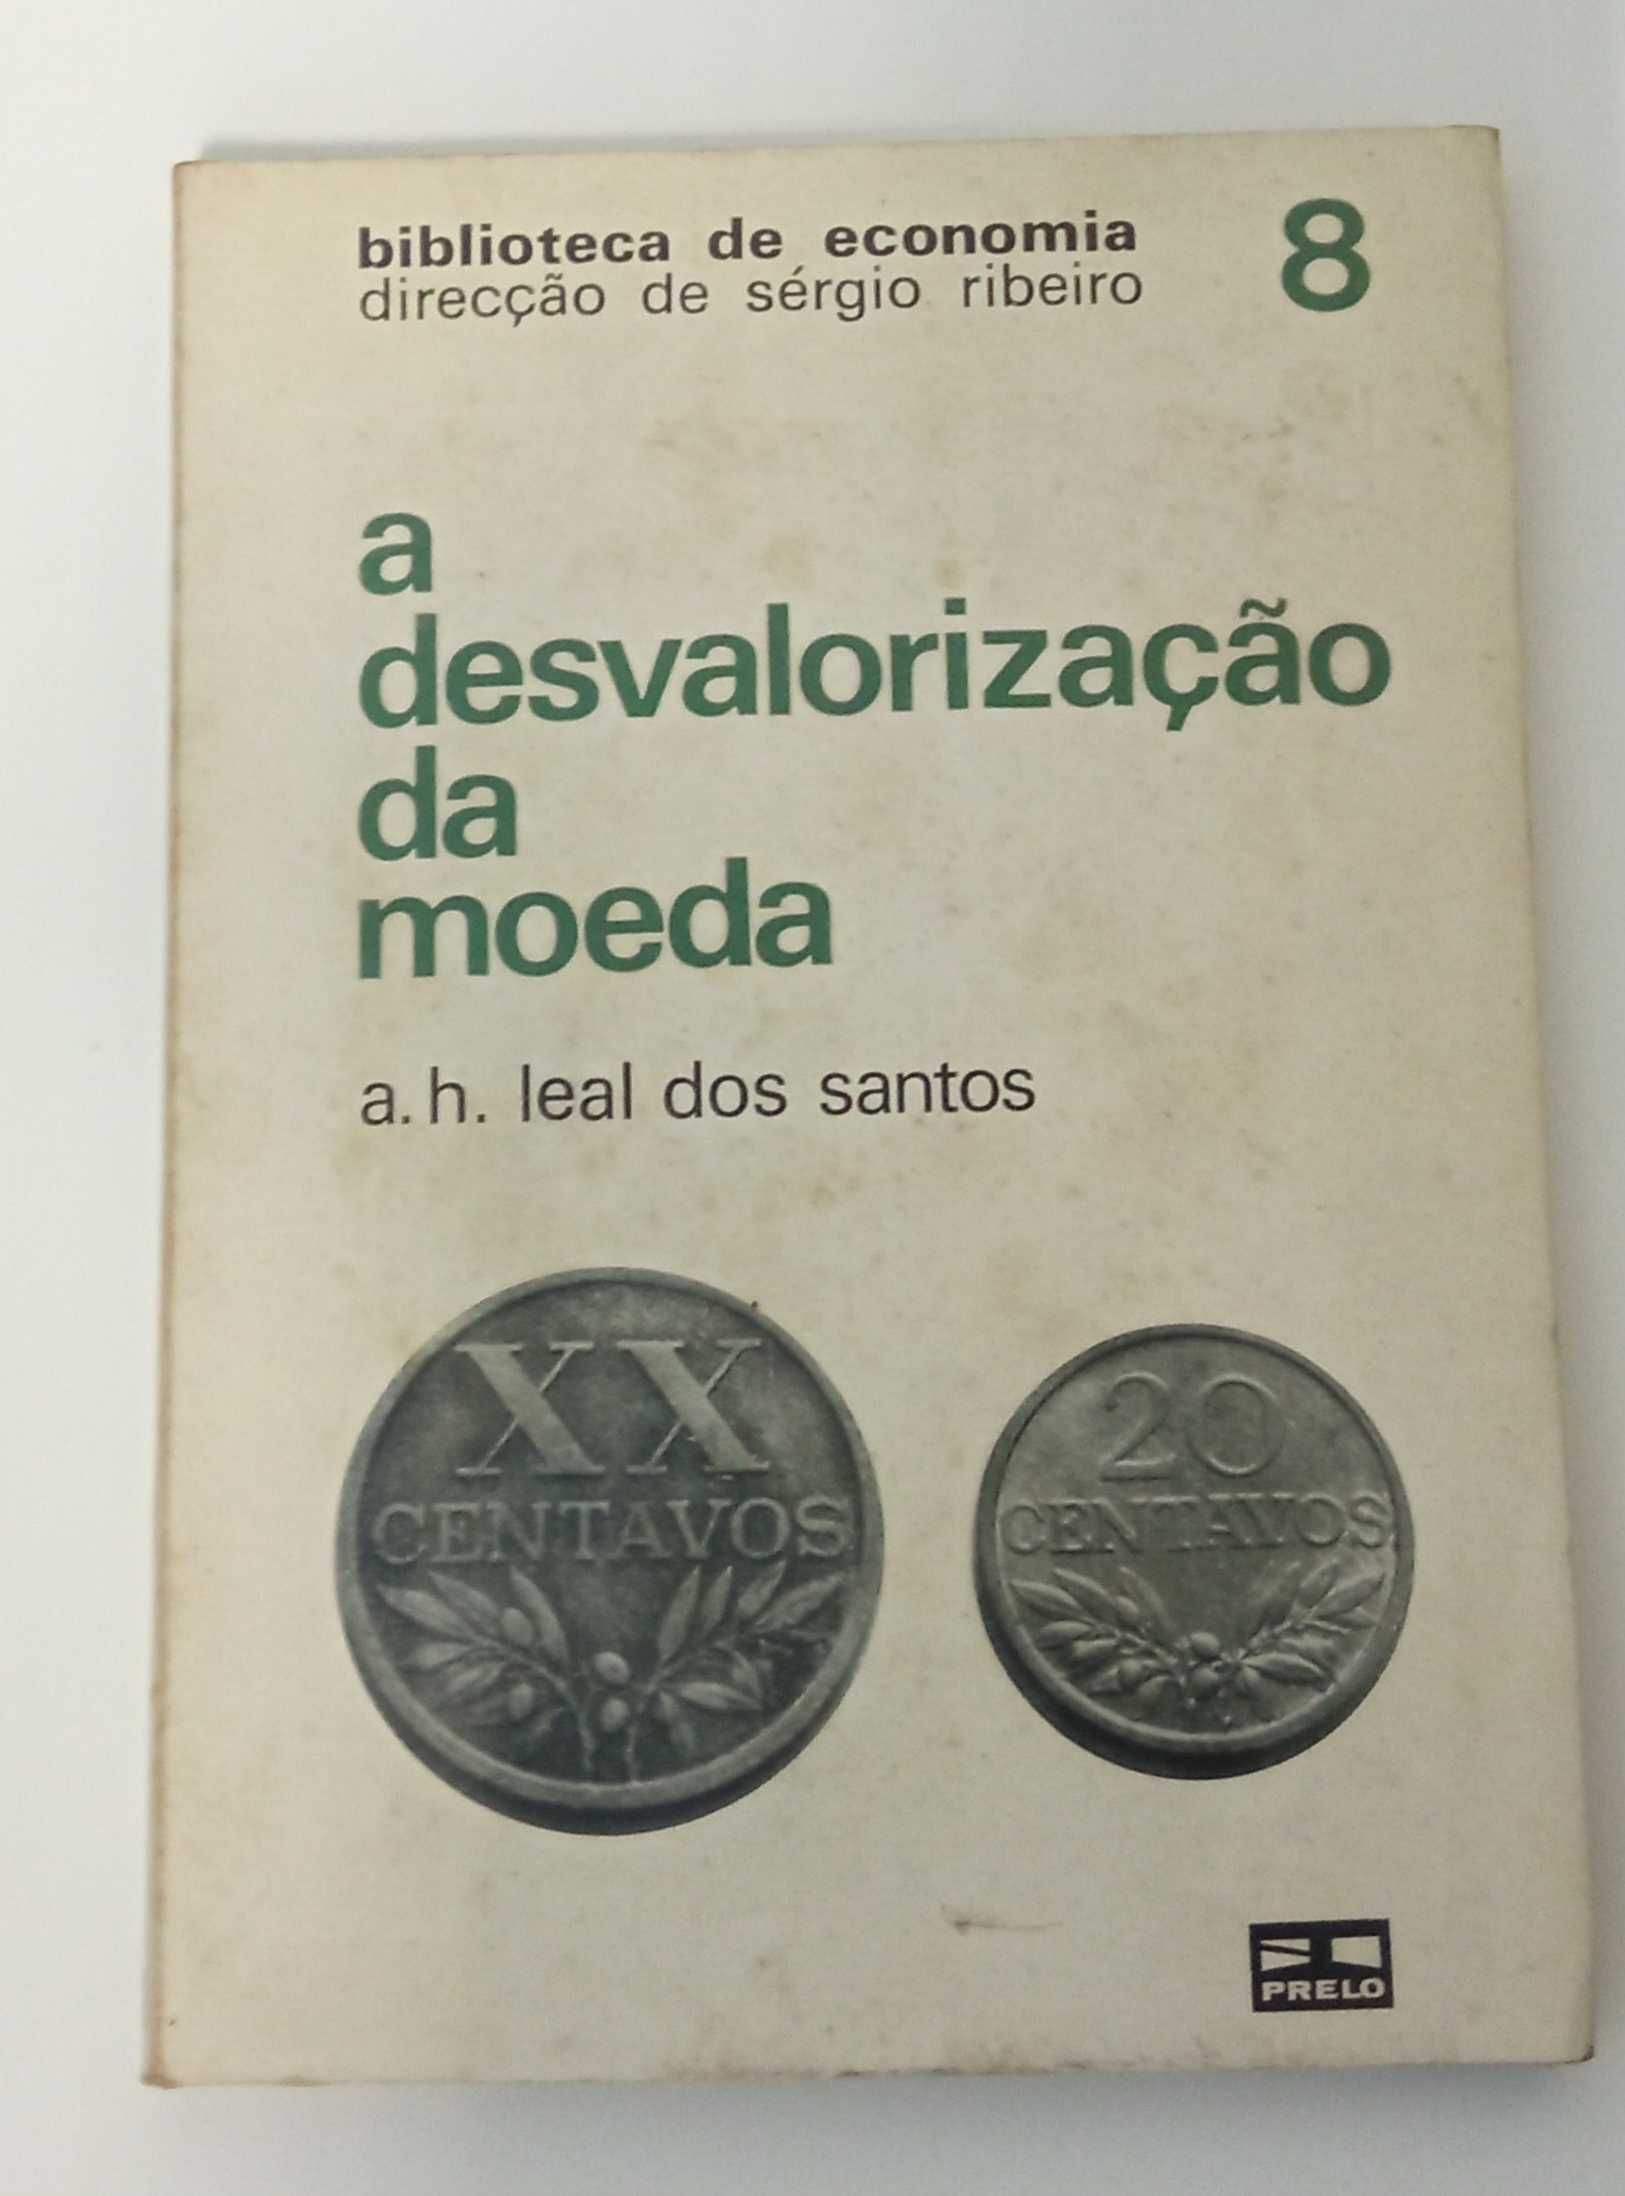 A desvalorização da moeda, de A. H. Leal dos Santos